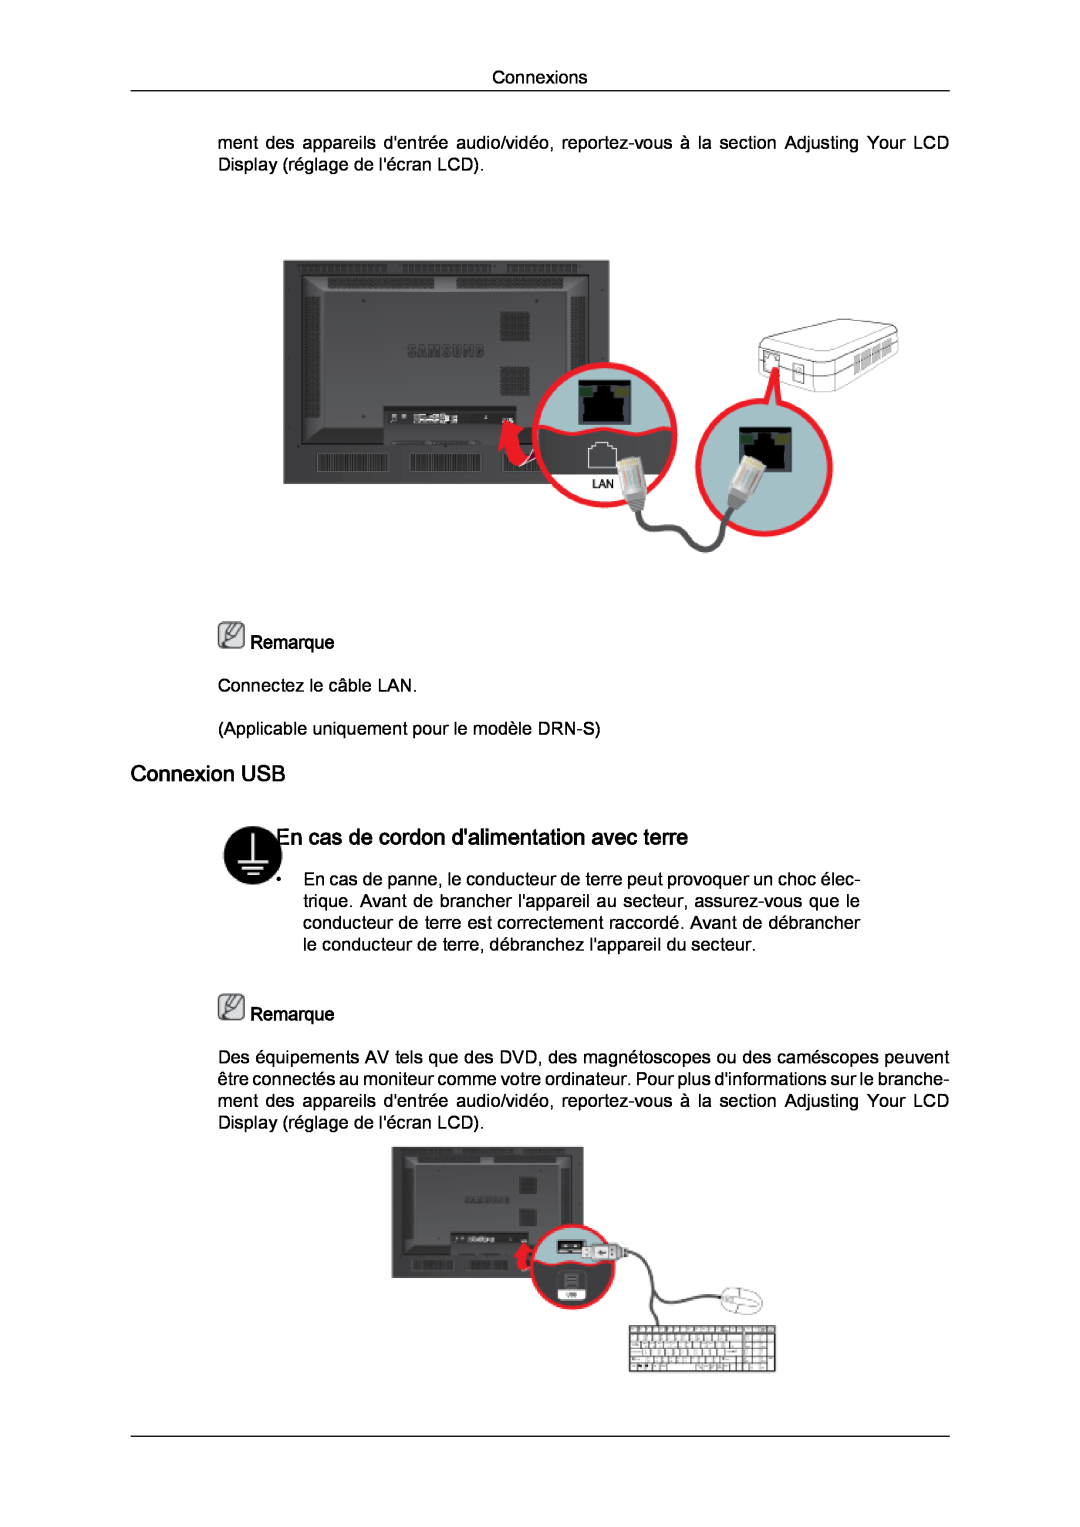 Samsung LH46SOQQSC/EN, LH46SOUQSC/EN, LH46SOTMBC/EN manual Connexion USB En cas de cordon dalimentation avec terre, Remarque 